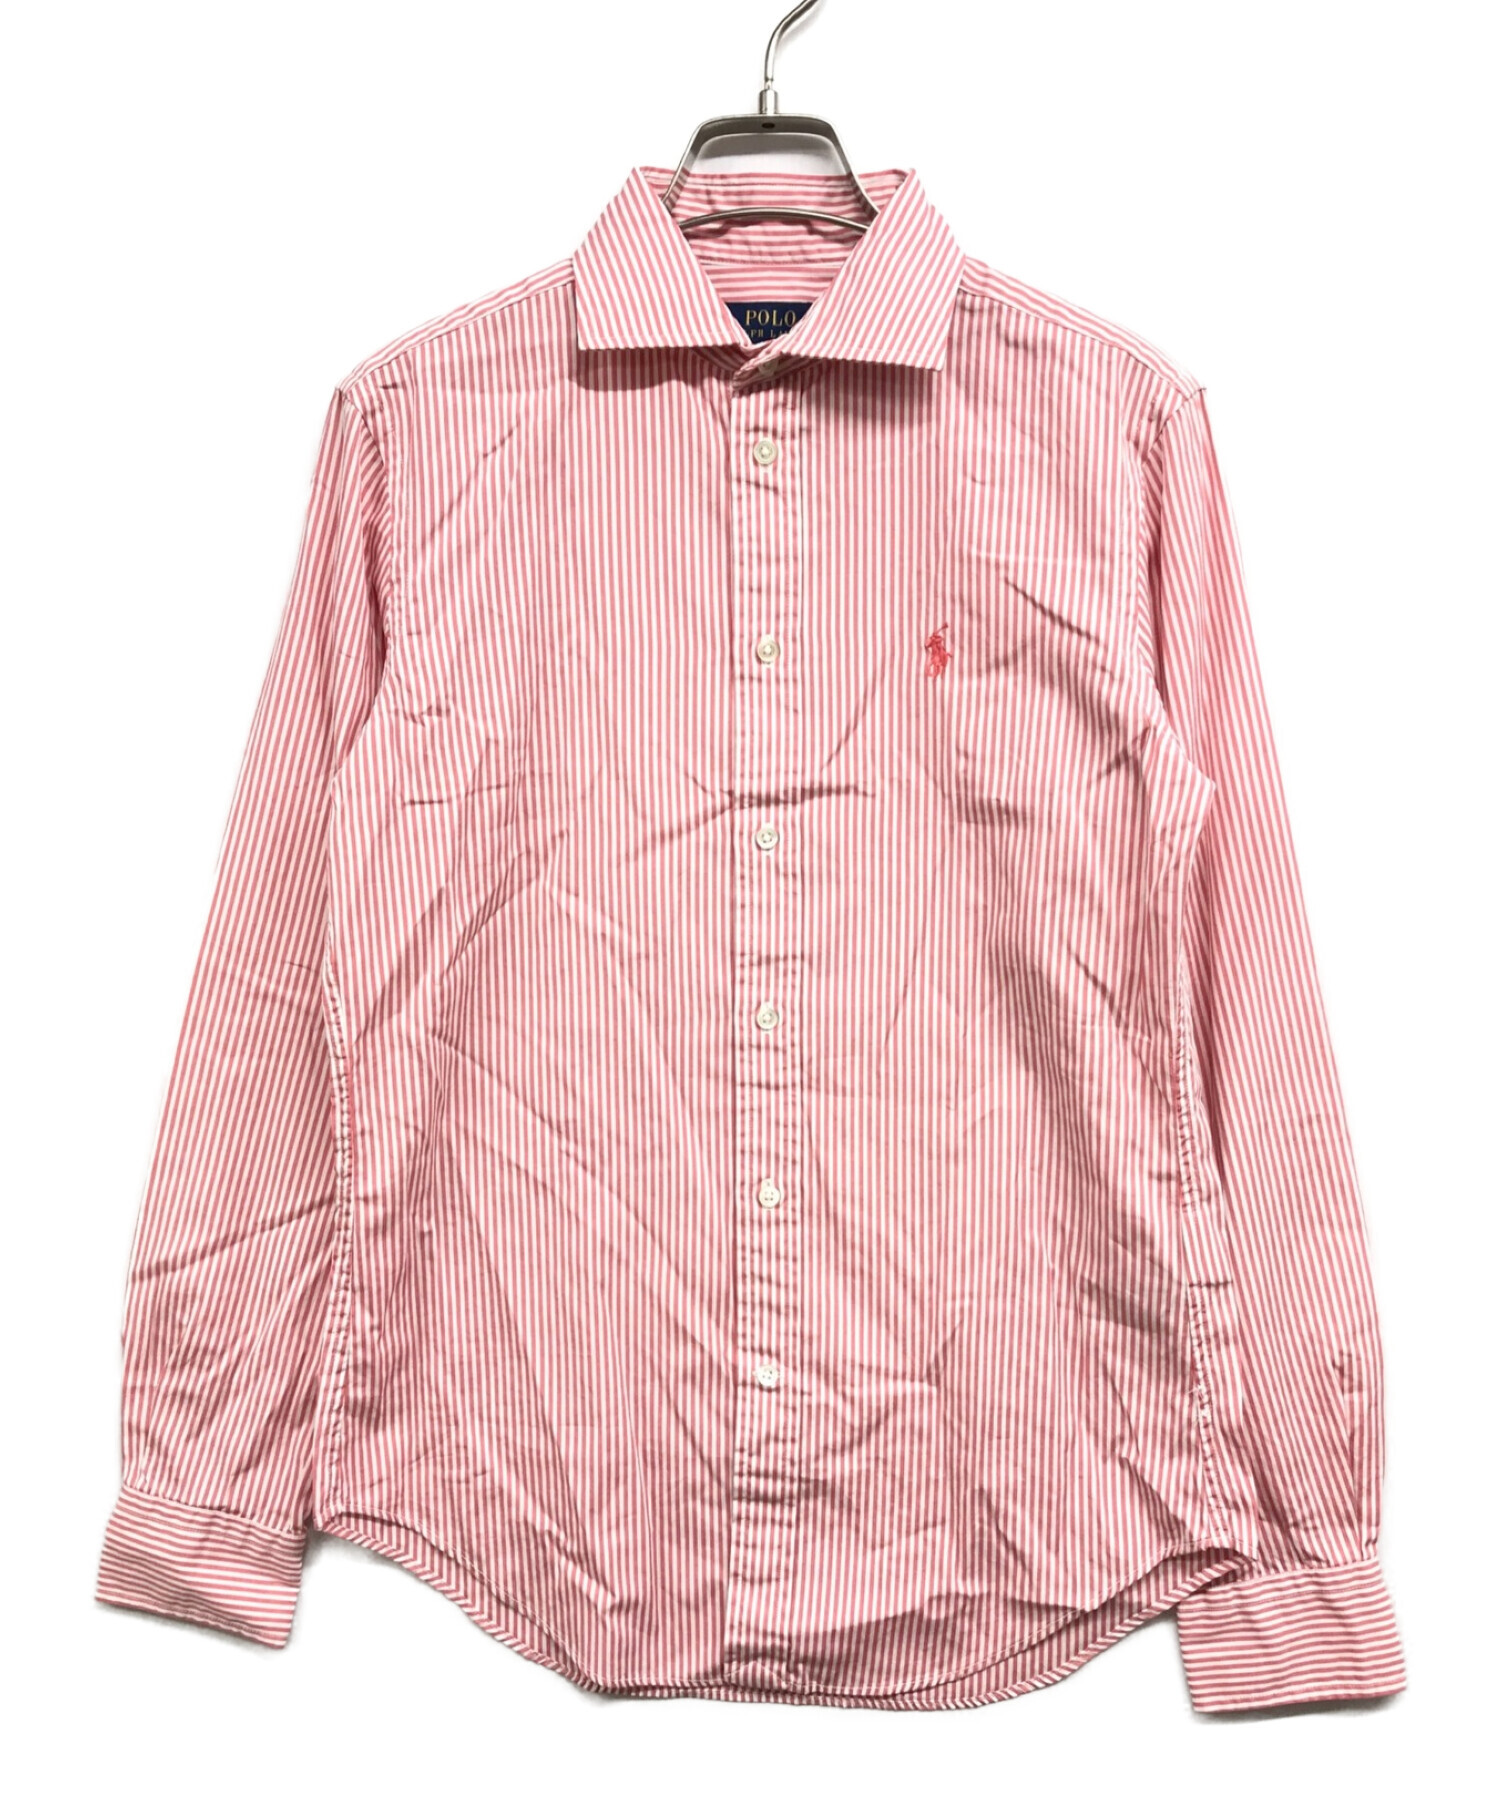 POLO RALPH LAUREN (ポロ・ラルフローレン) ストライプシャツ ピンク×ホワイト サイズ:2